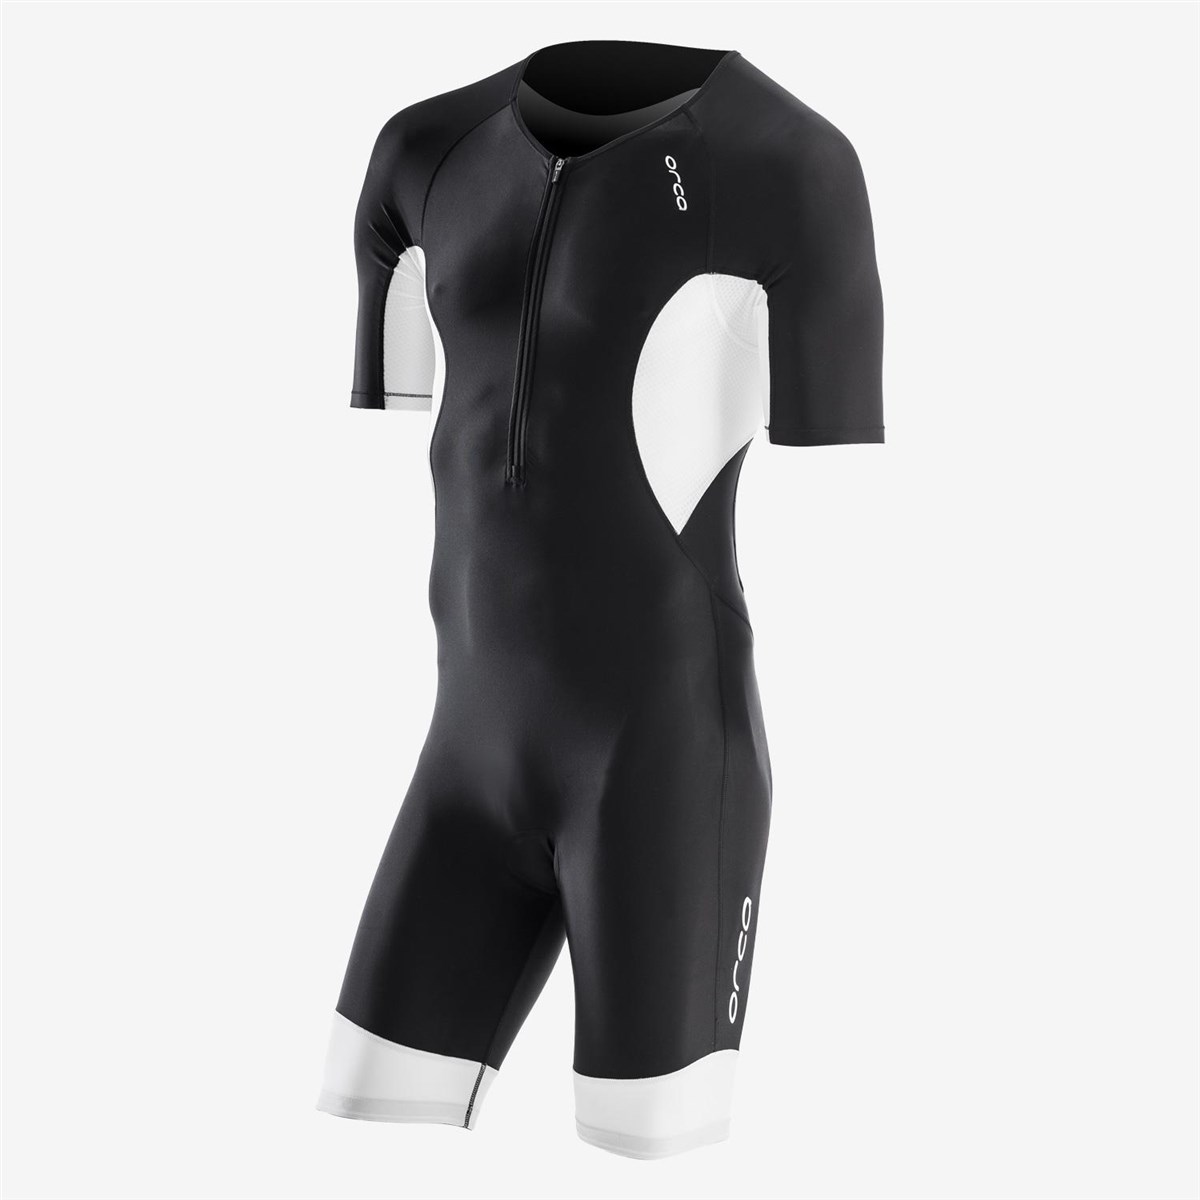 Orca Core Short Sleeve Race Suit